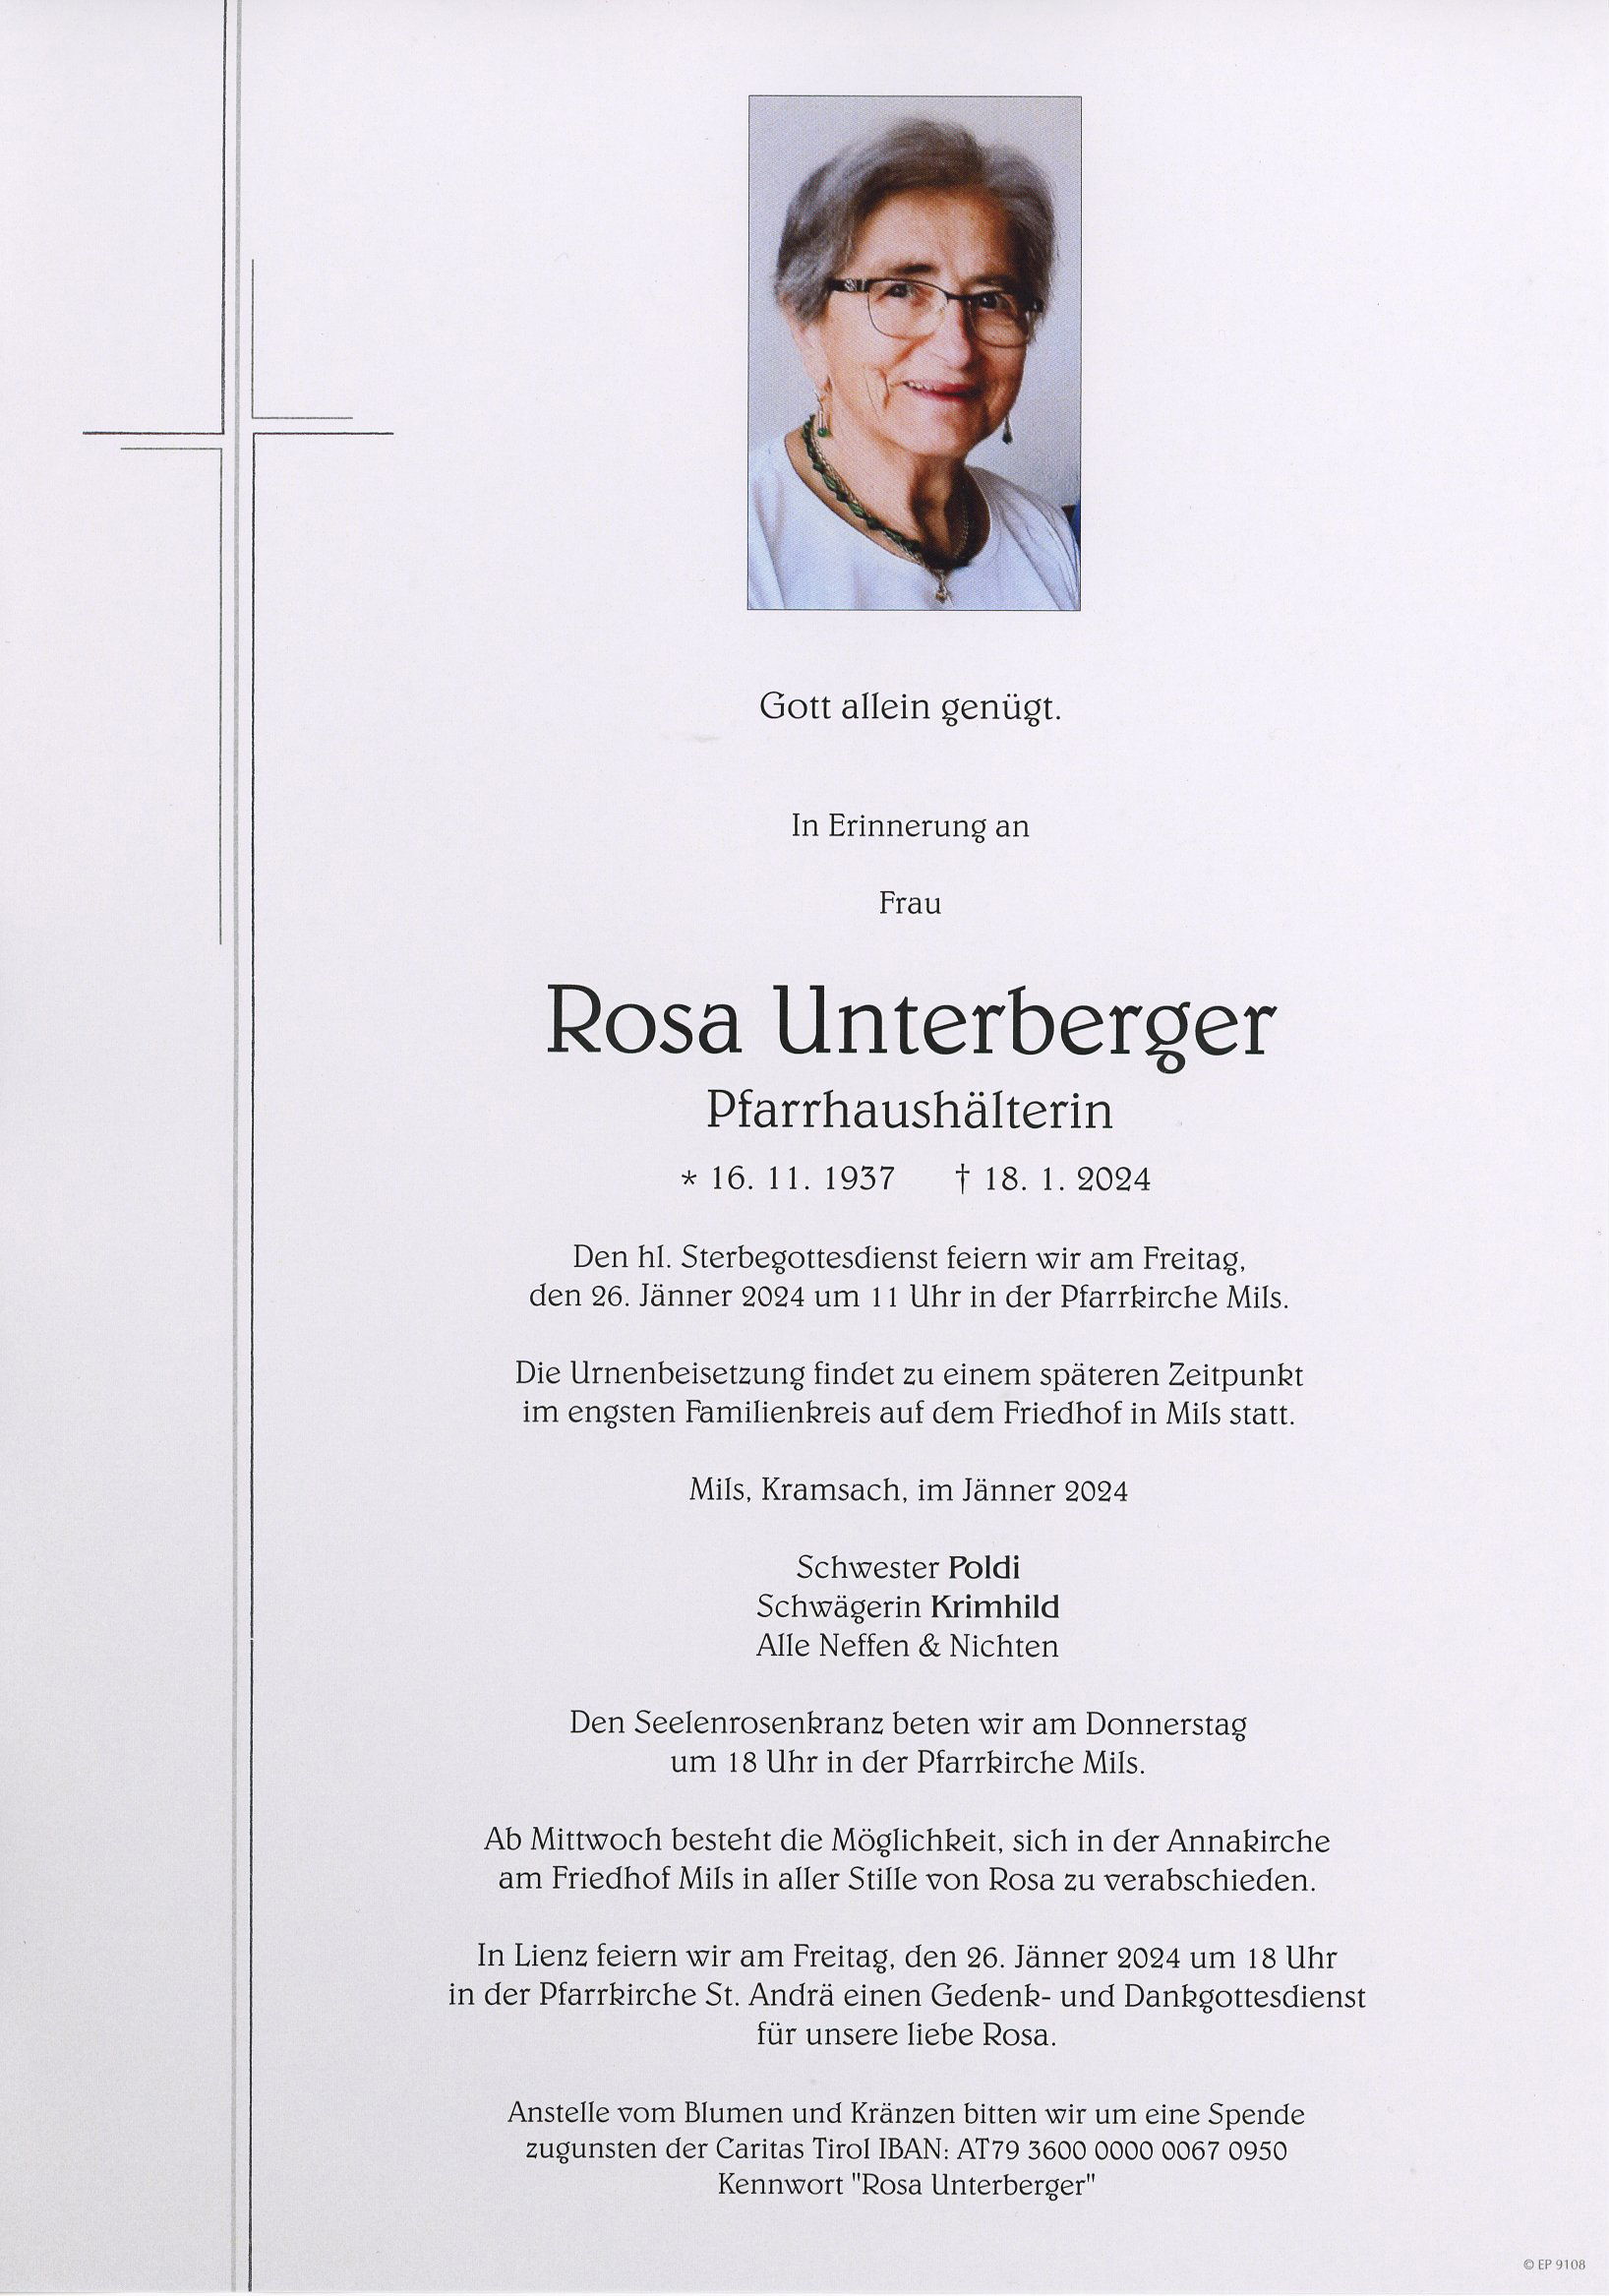 Rosa Unterberger